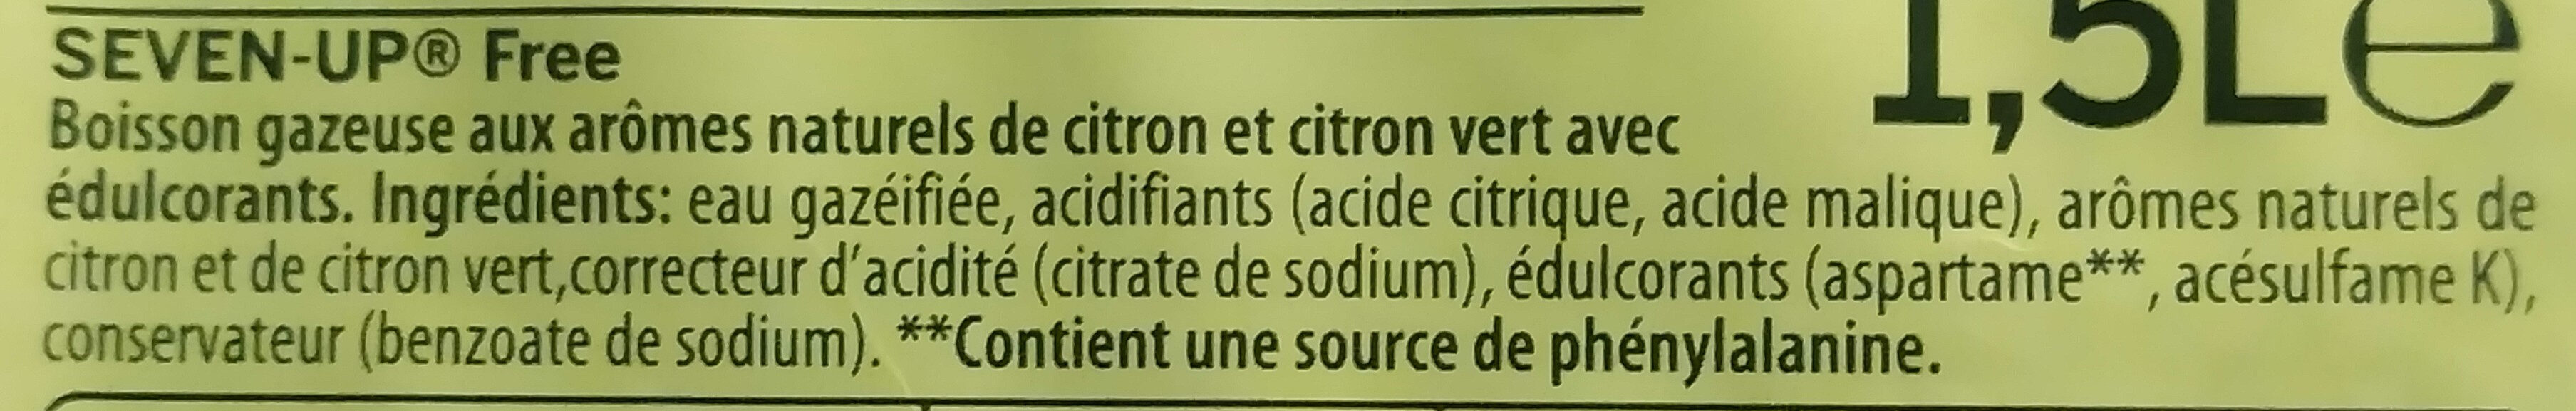 7UP Free saveur citron & citron vert 1,5 L - Ingrediënten - fr